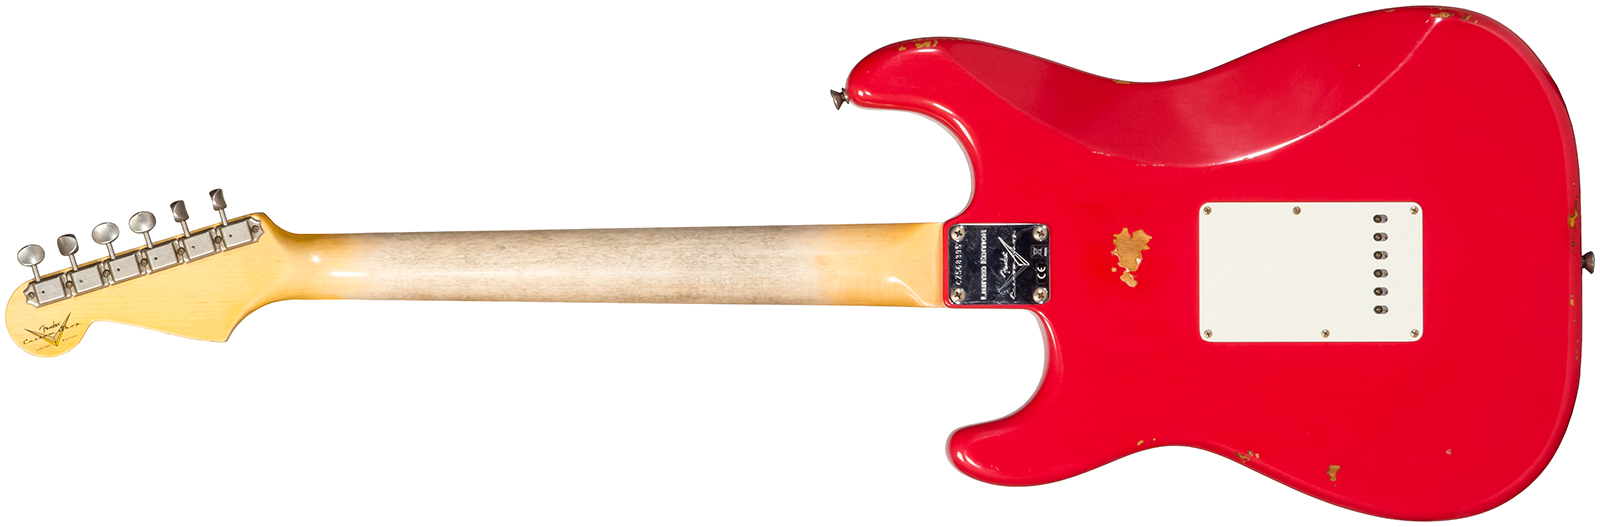 Fender Custom Shop Strat Late 1964 3s Trem Rw #cz568395 - Relic Aged Fiesta Red - Elektrische gitaar in Str-vorm - Variation 1